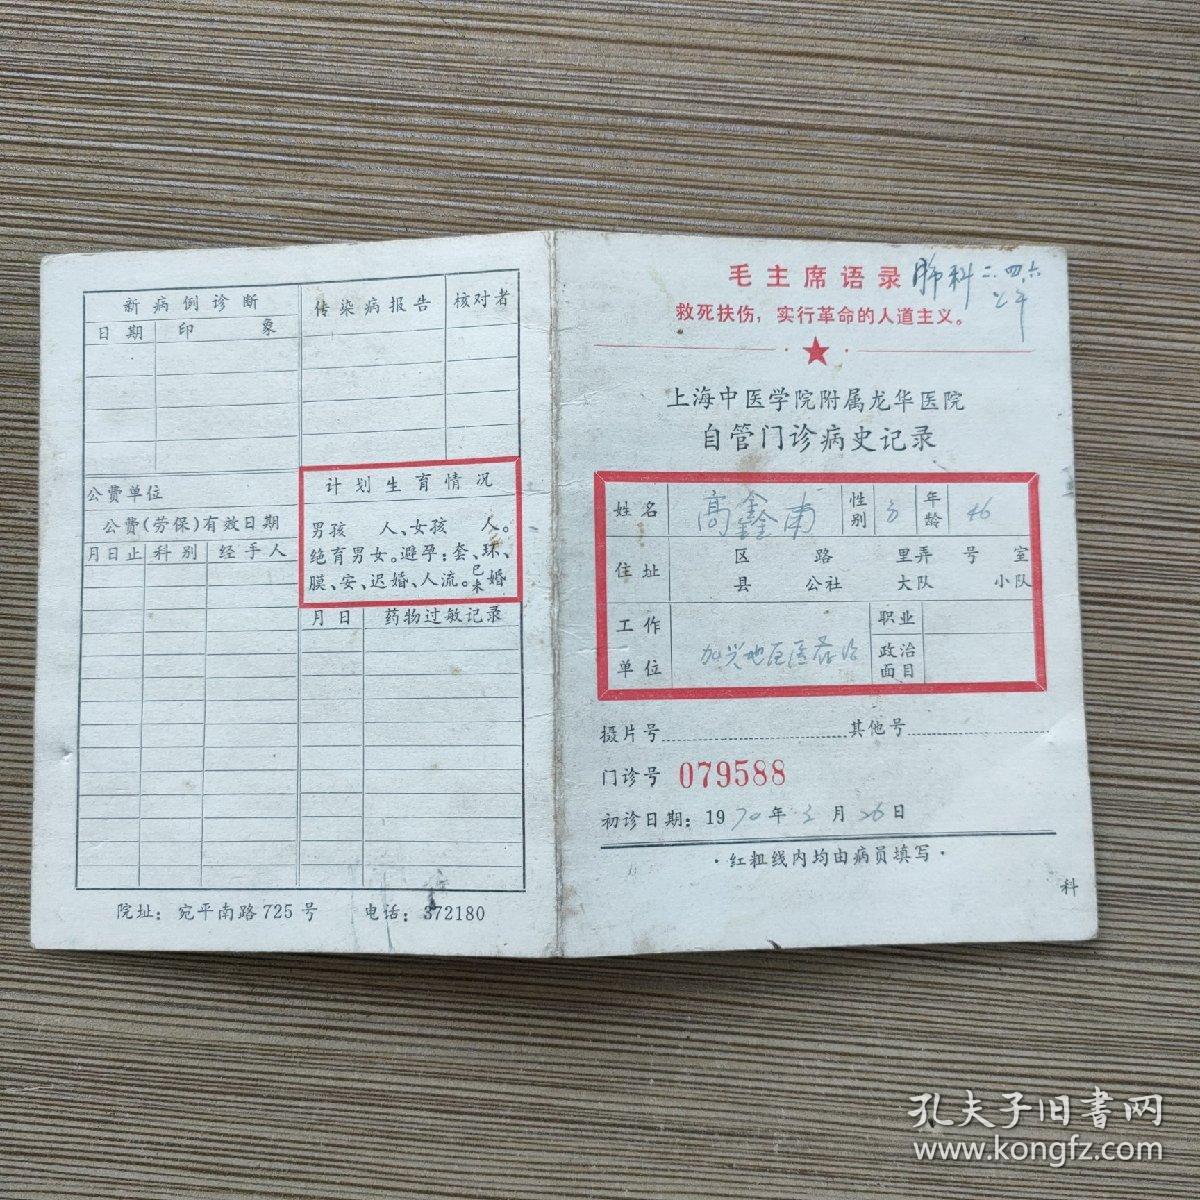 语录版 上海中医学院附属龙华医院自管门诊病史记录